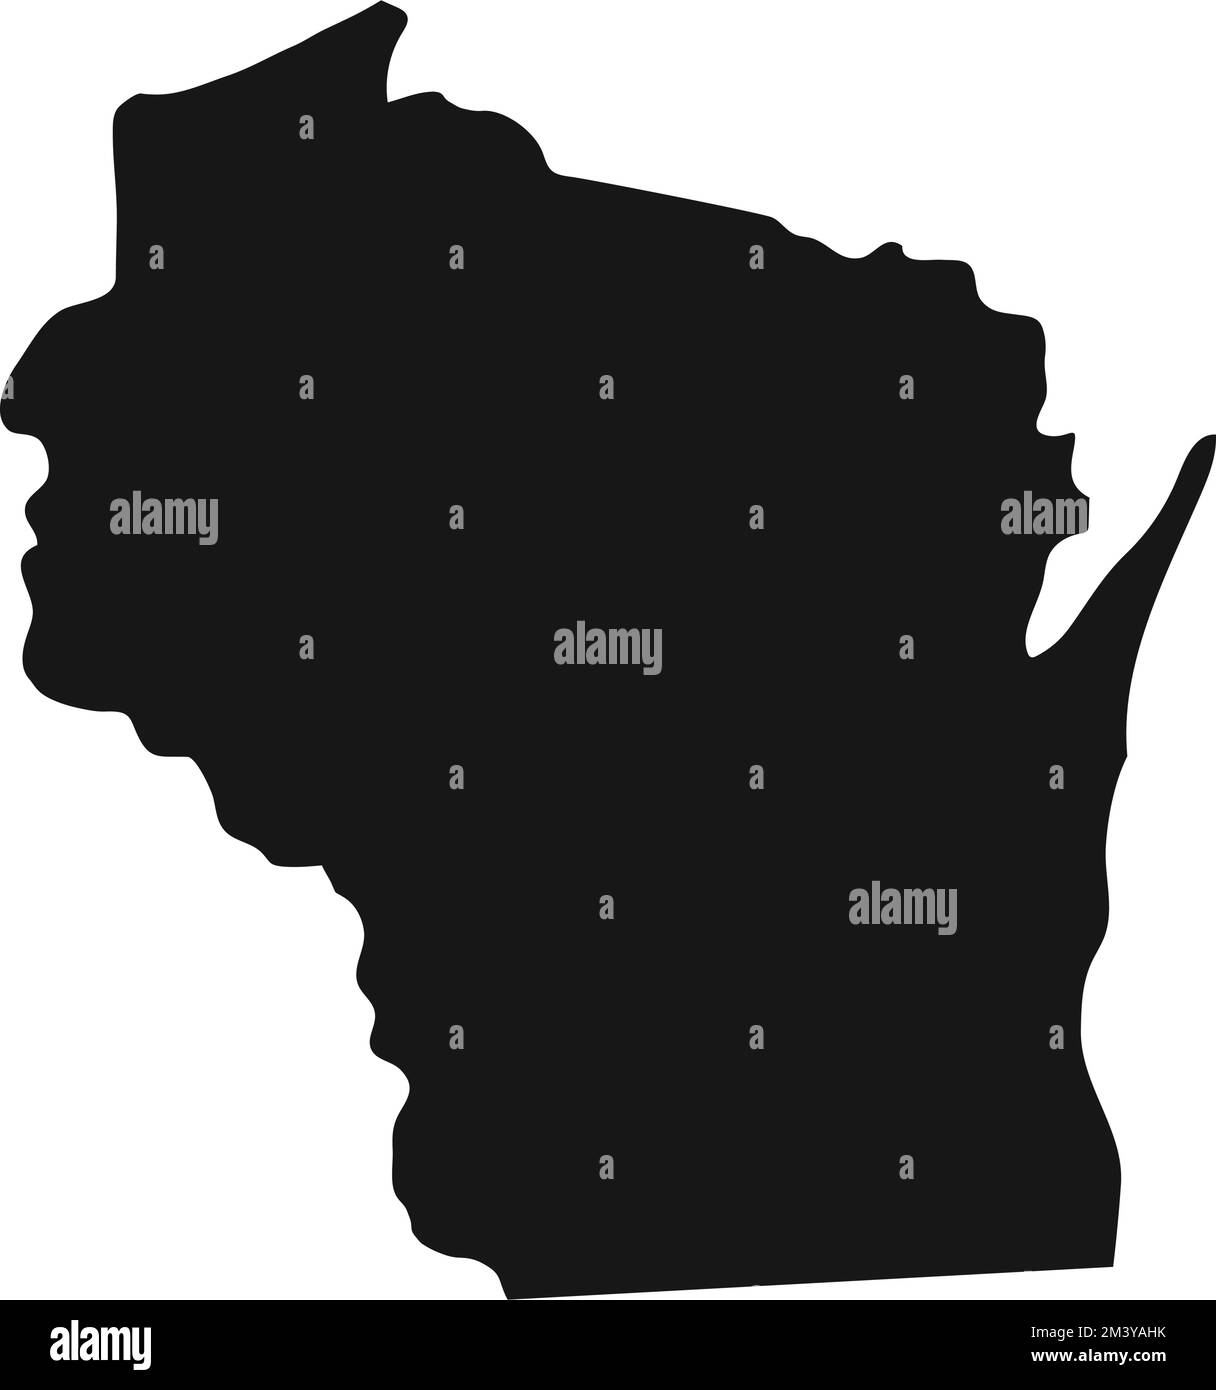 Silhouette de la frontière de l'État du Wisconsin. Illustration de Vecteur